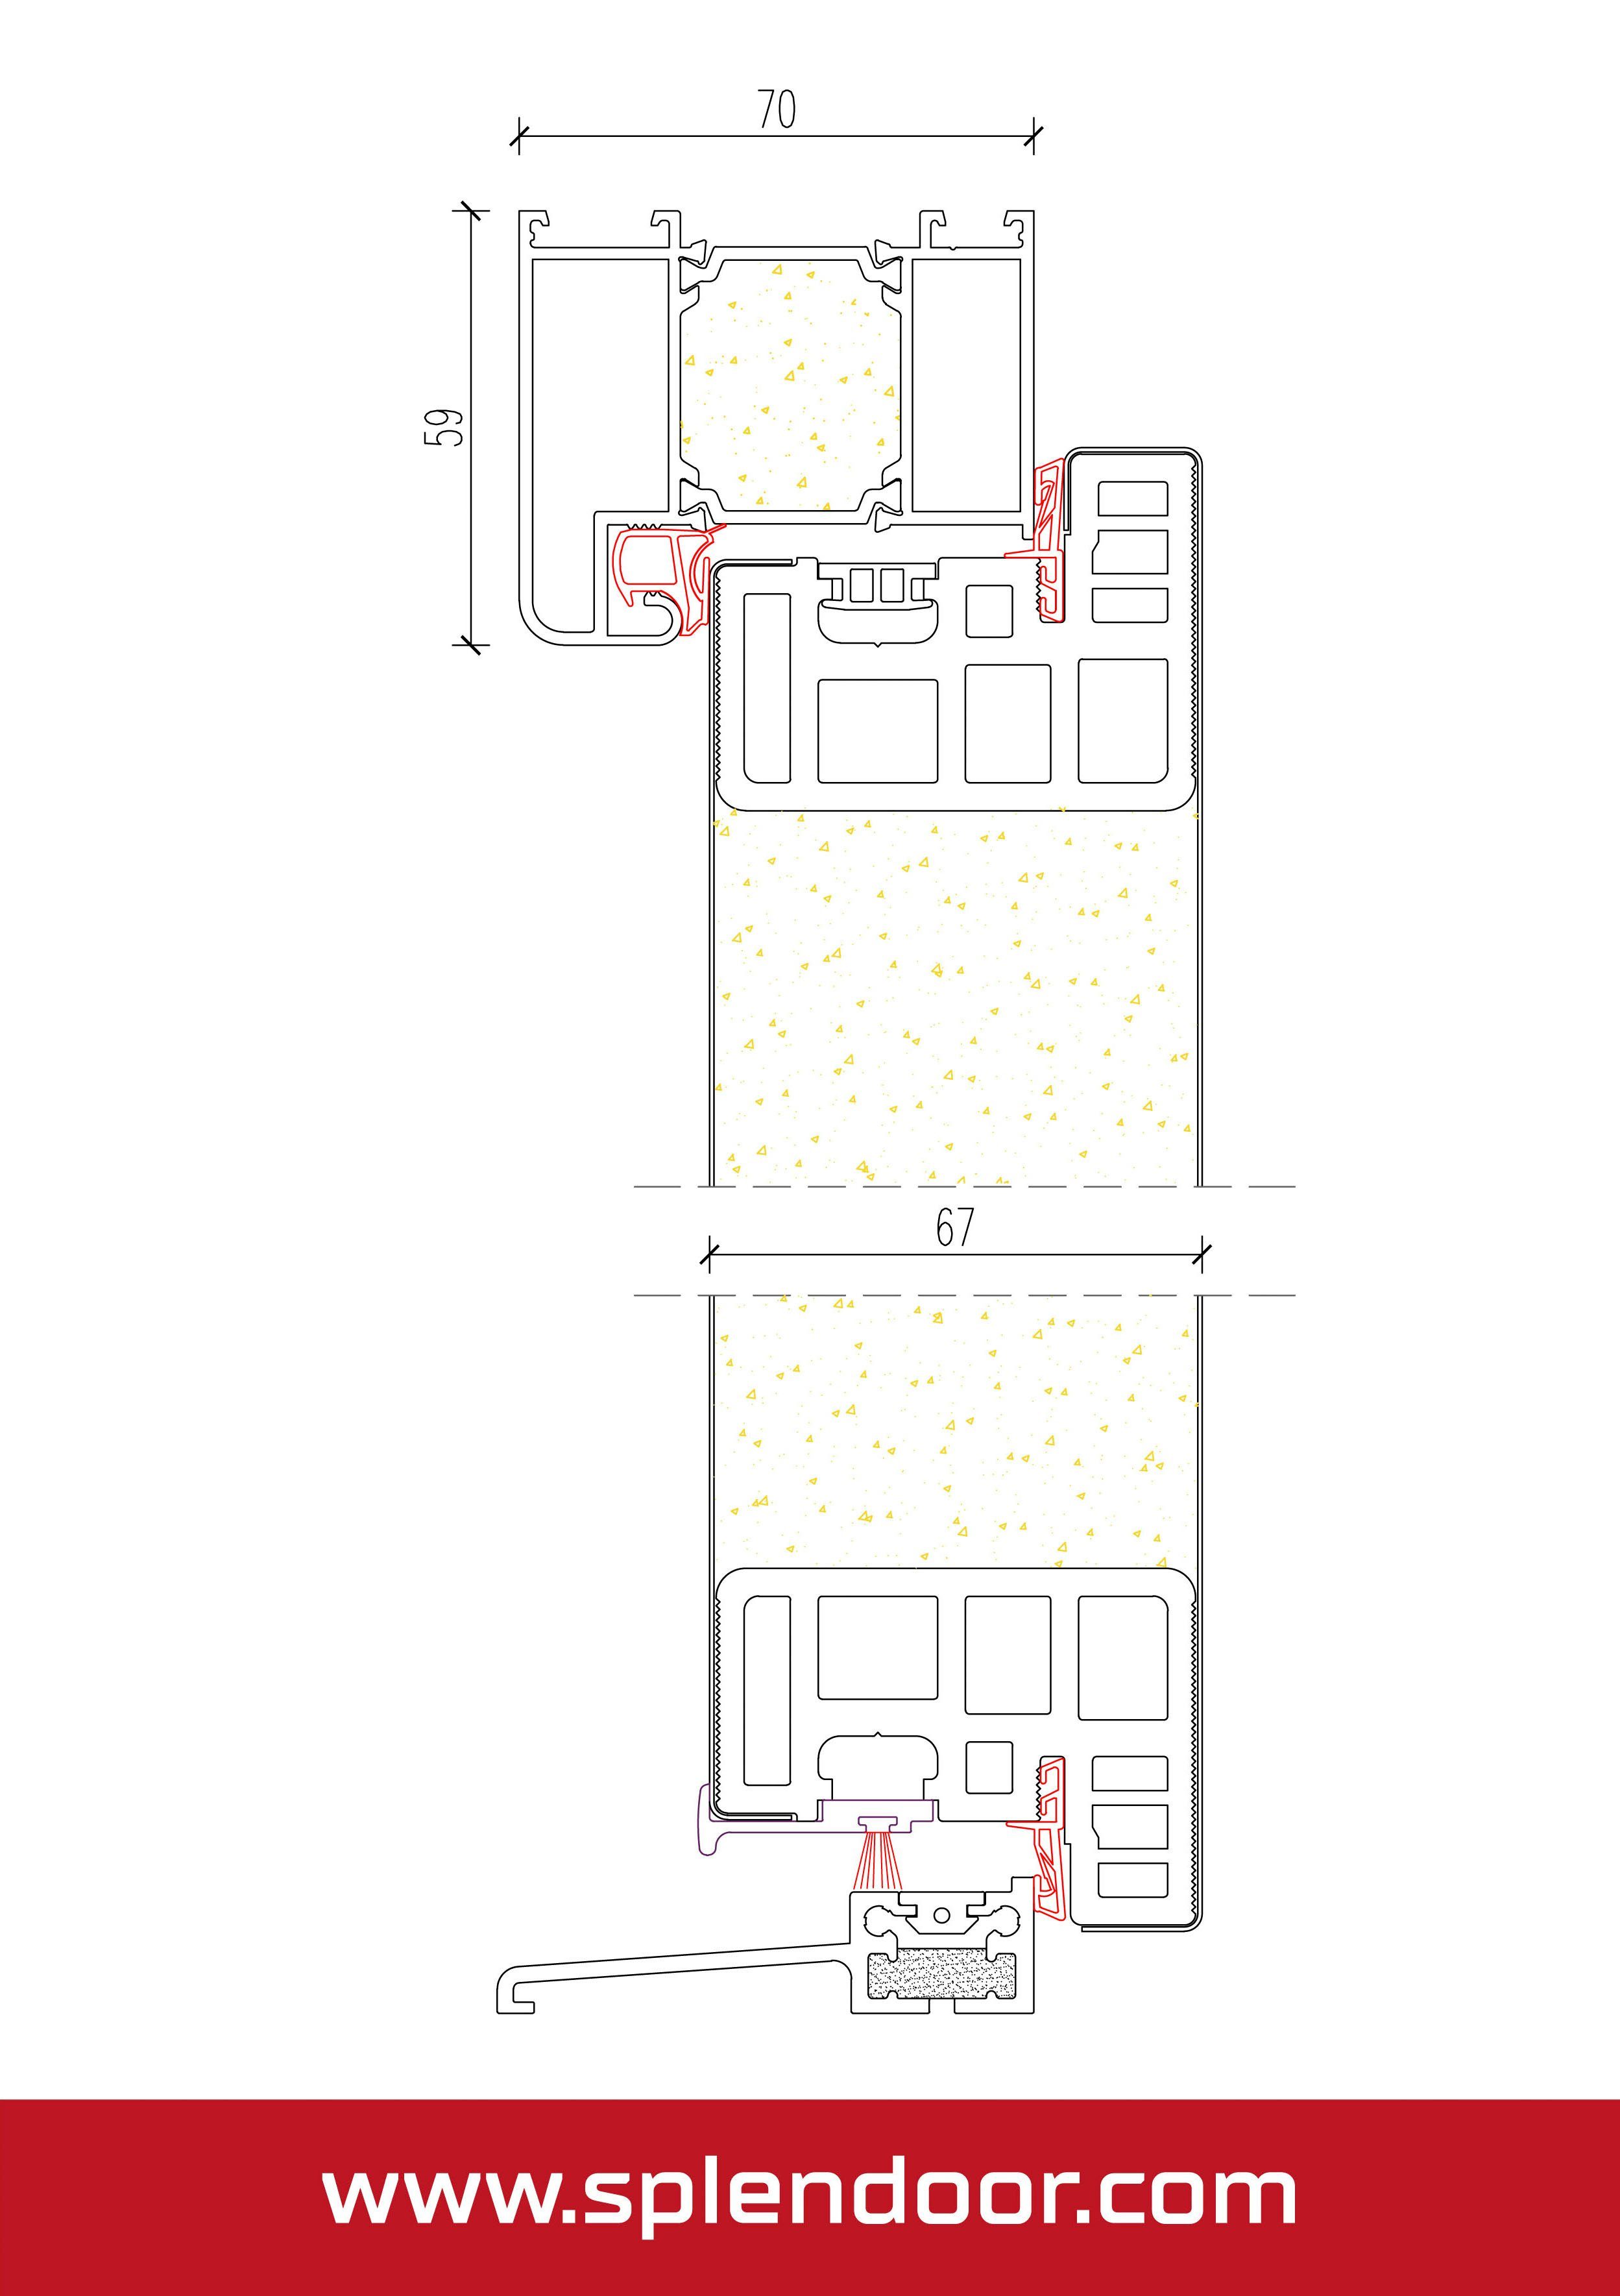 SplenDoor Haustür ATHEN Prime (Set), mit wärmegedämmt weiß und Türrahmen Stabil, 3-fach gut Verglasung, sehr mit